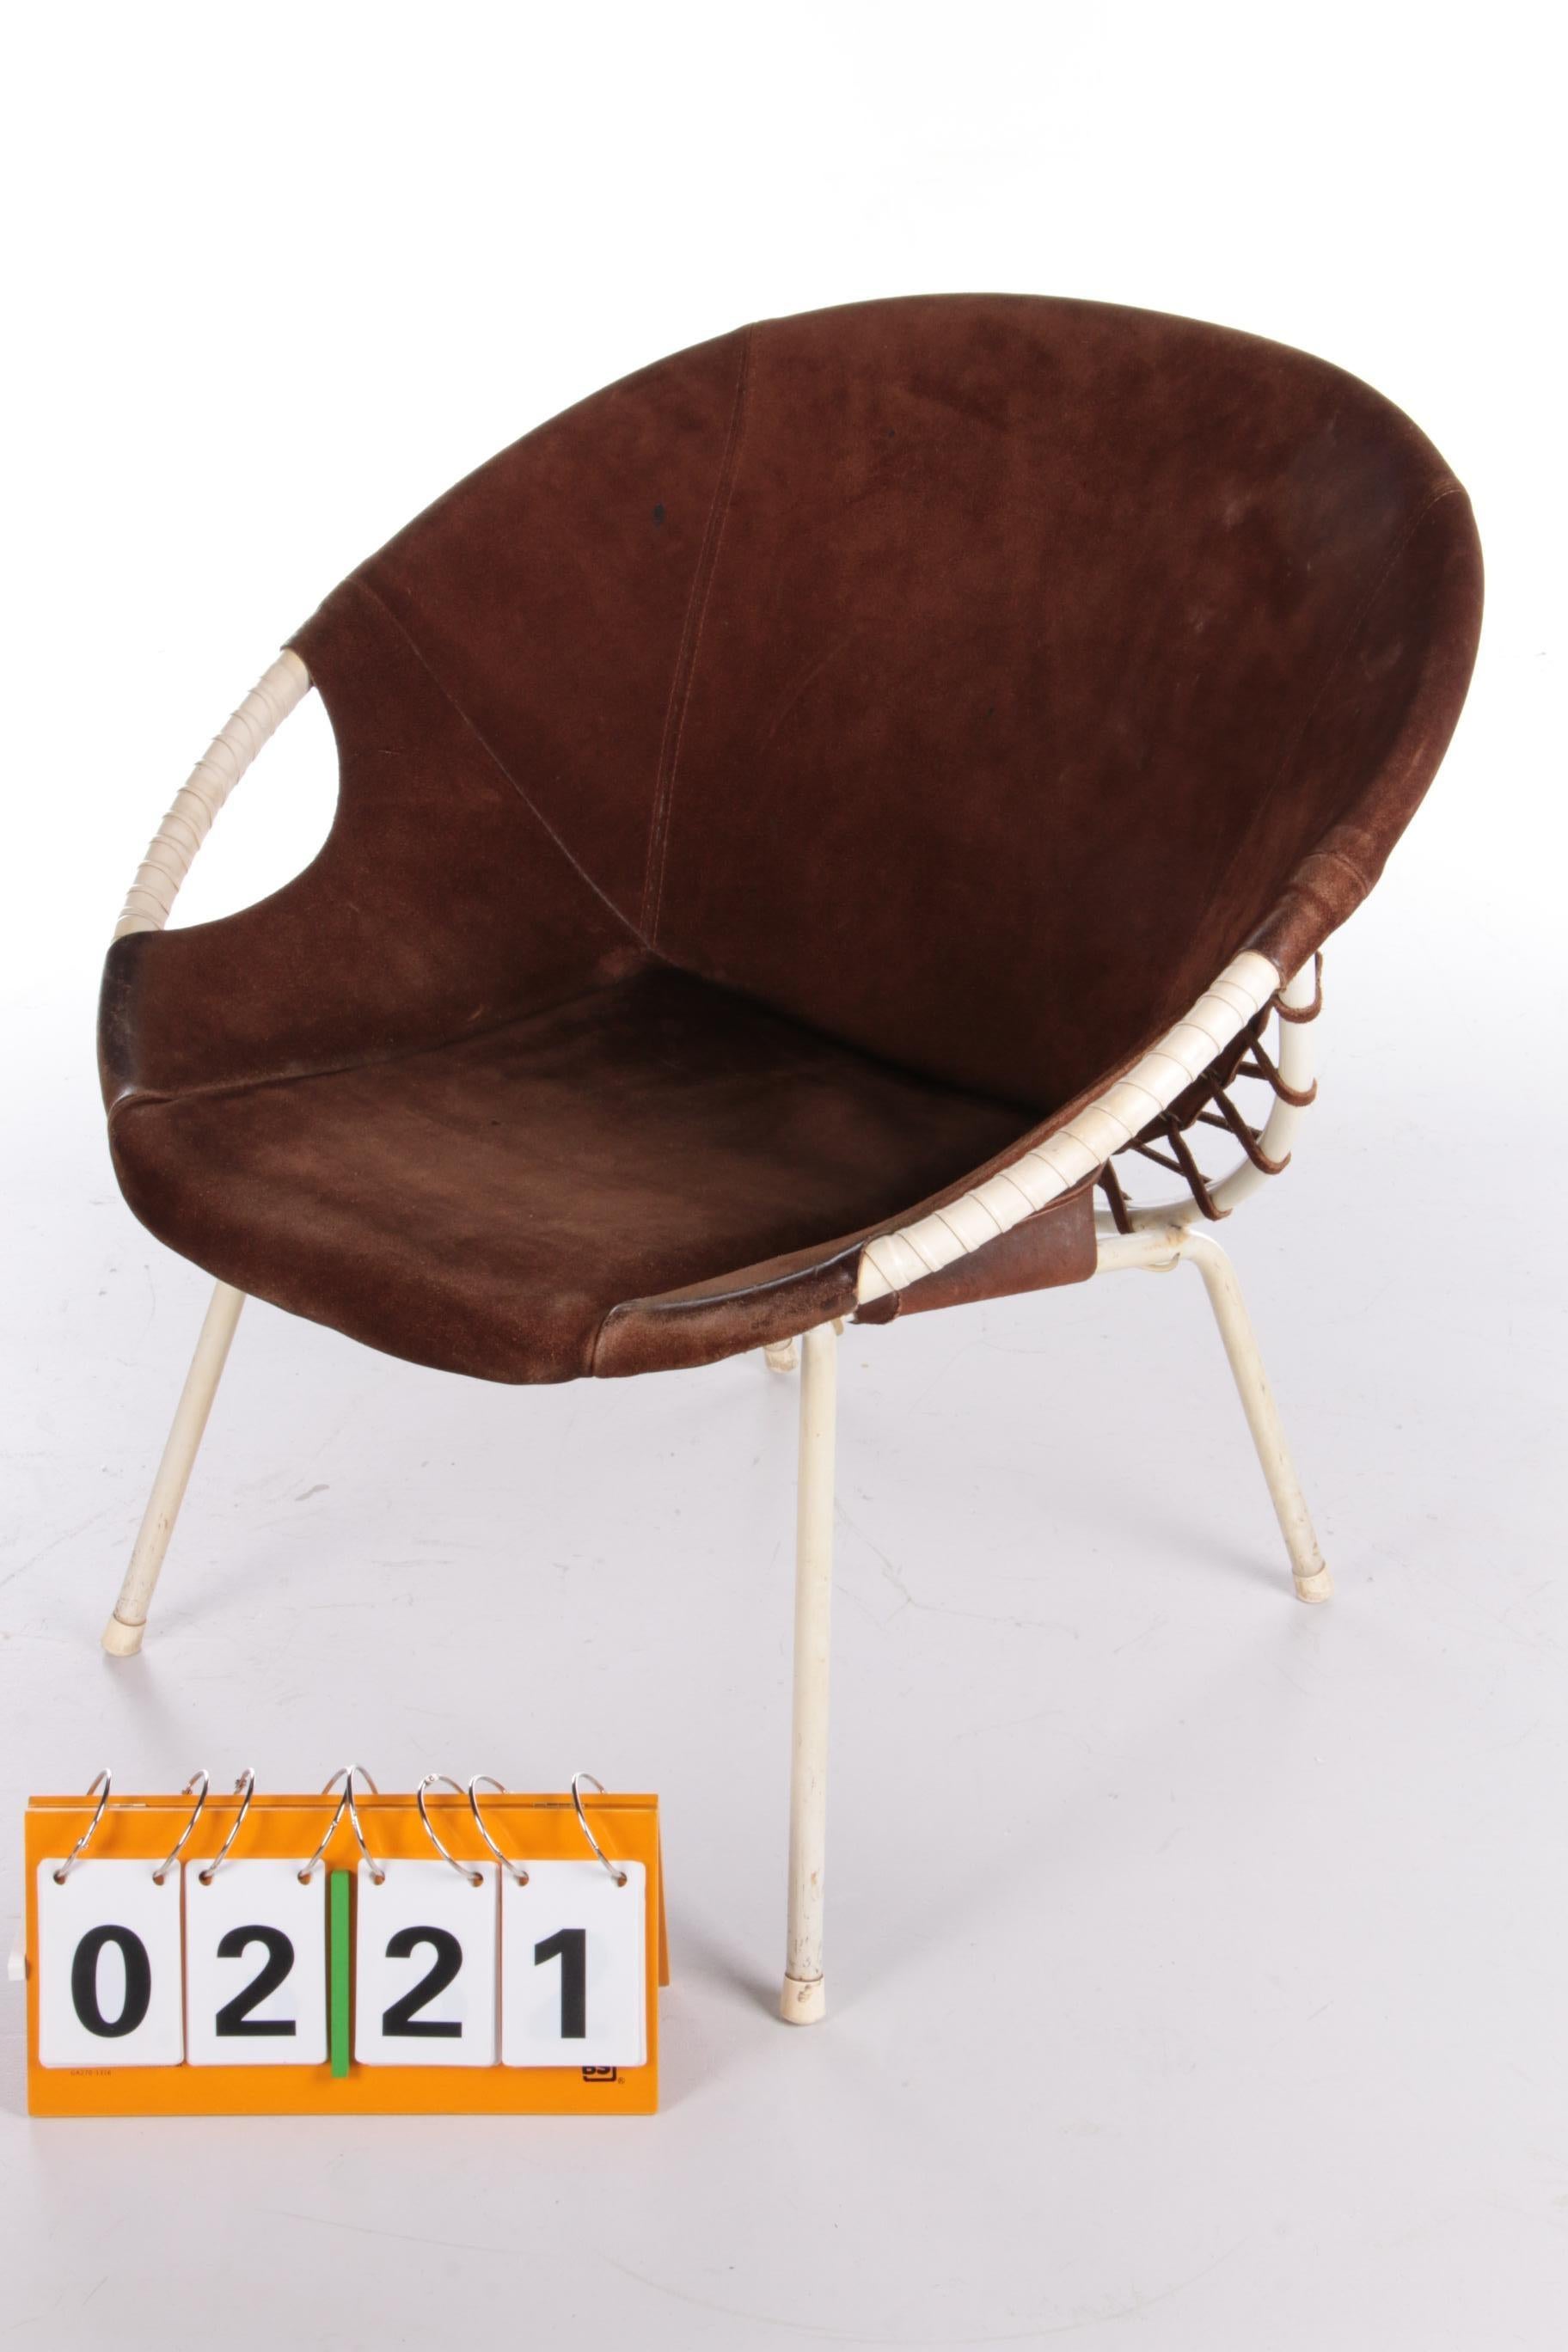 German Vintage Balloon Chair Design by Lusch Erzeugnis, 1960s